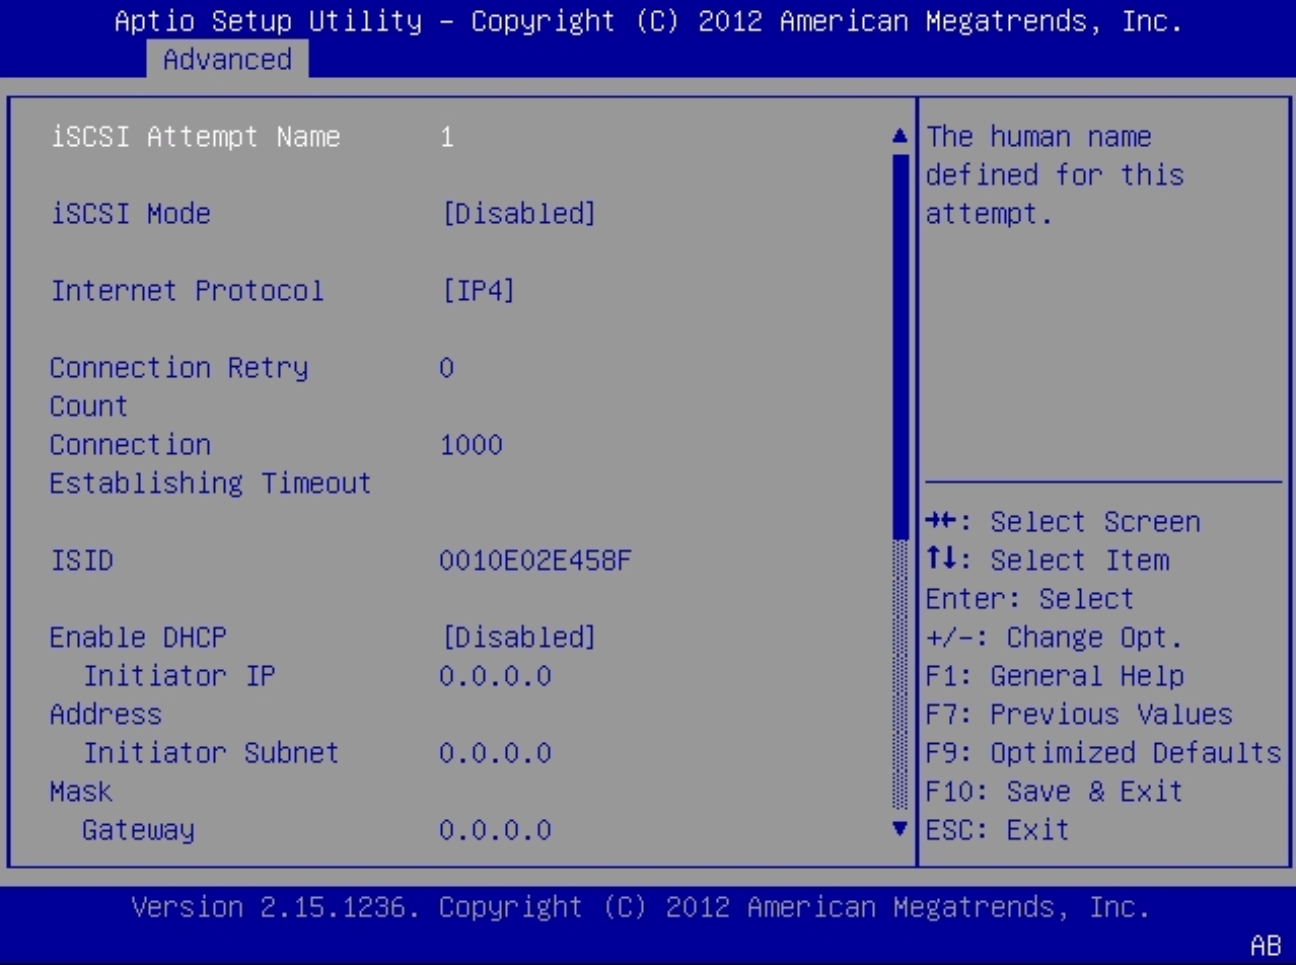 image:En esta figura, se muestra la pantalla de introducción de intento iSCSI del menú UEFI Driver Control (Control de controladores UEFI).